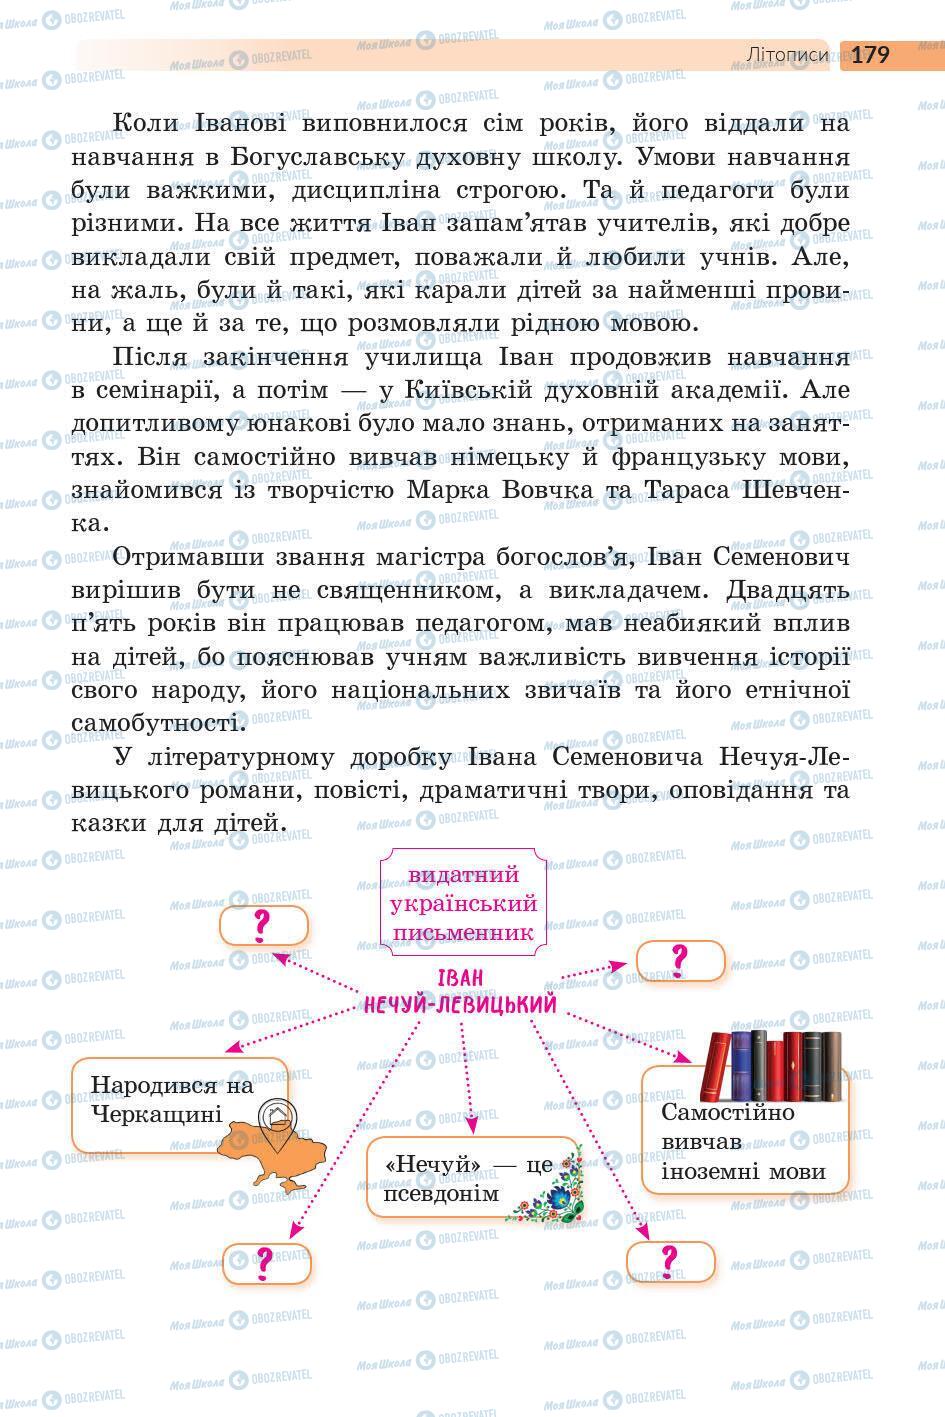 Підручники Українська література 5 клас сторінка 180